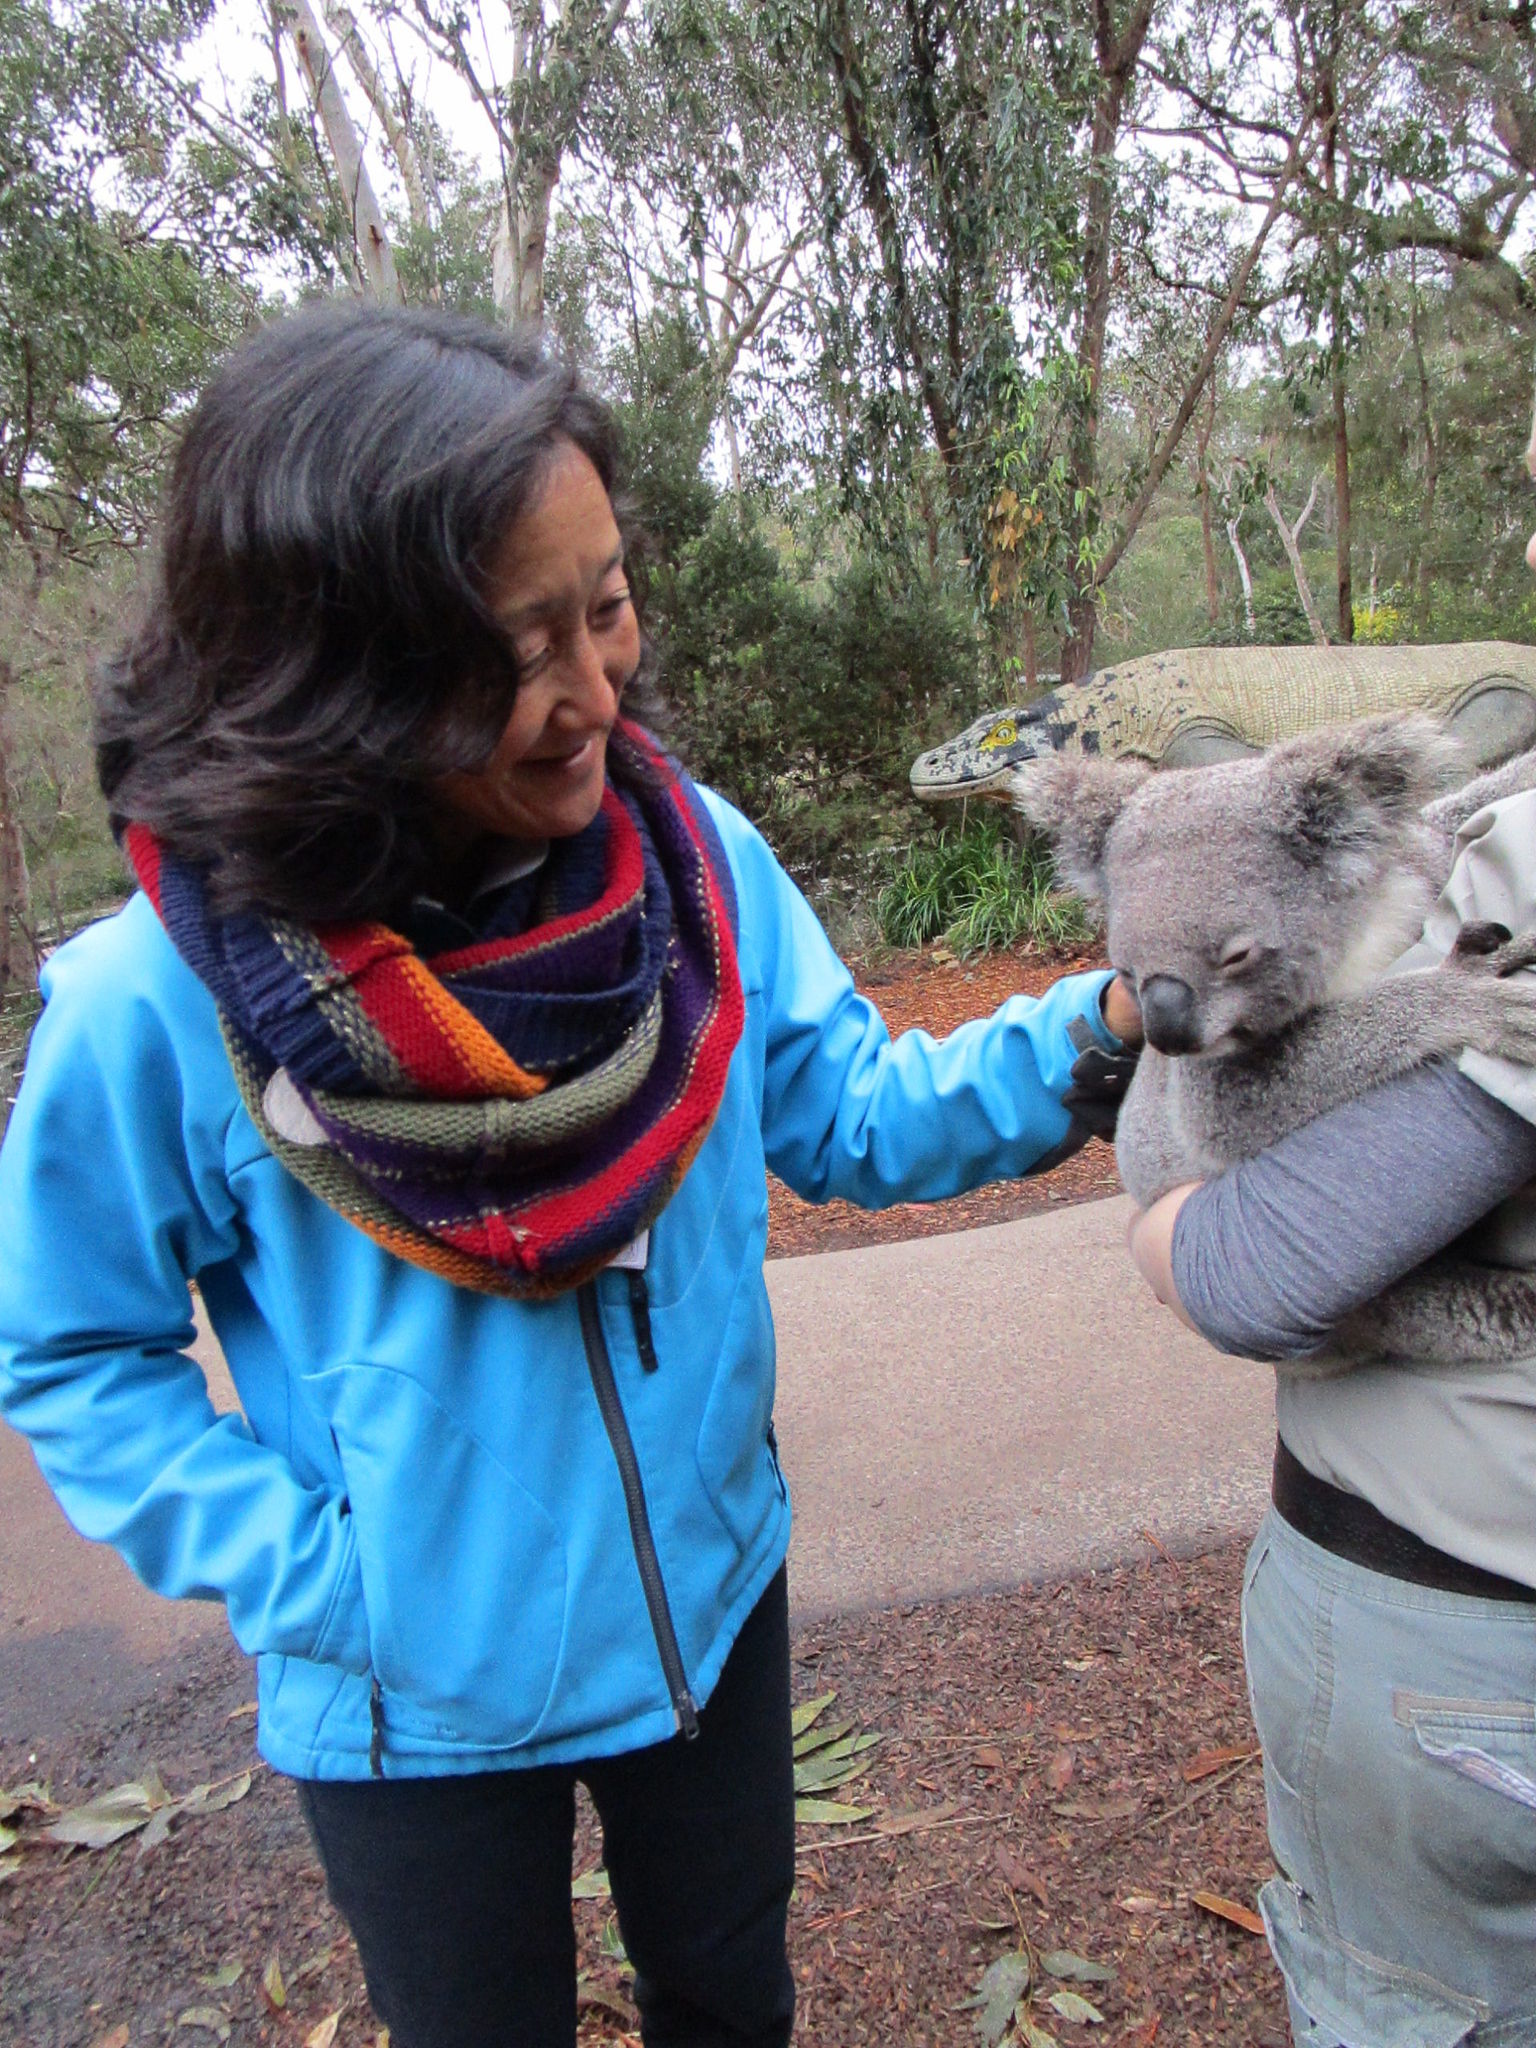 Meeting a koala